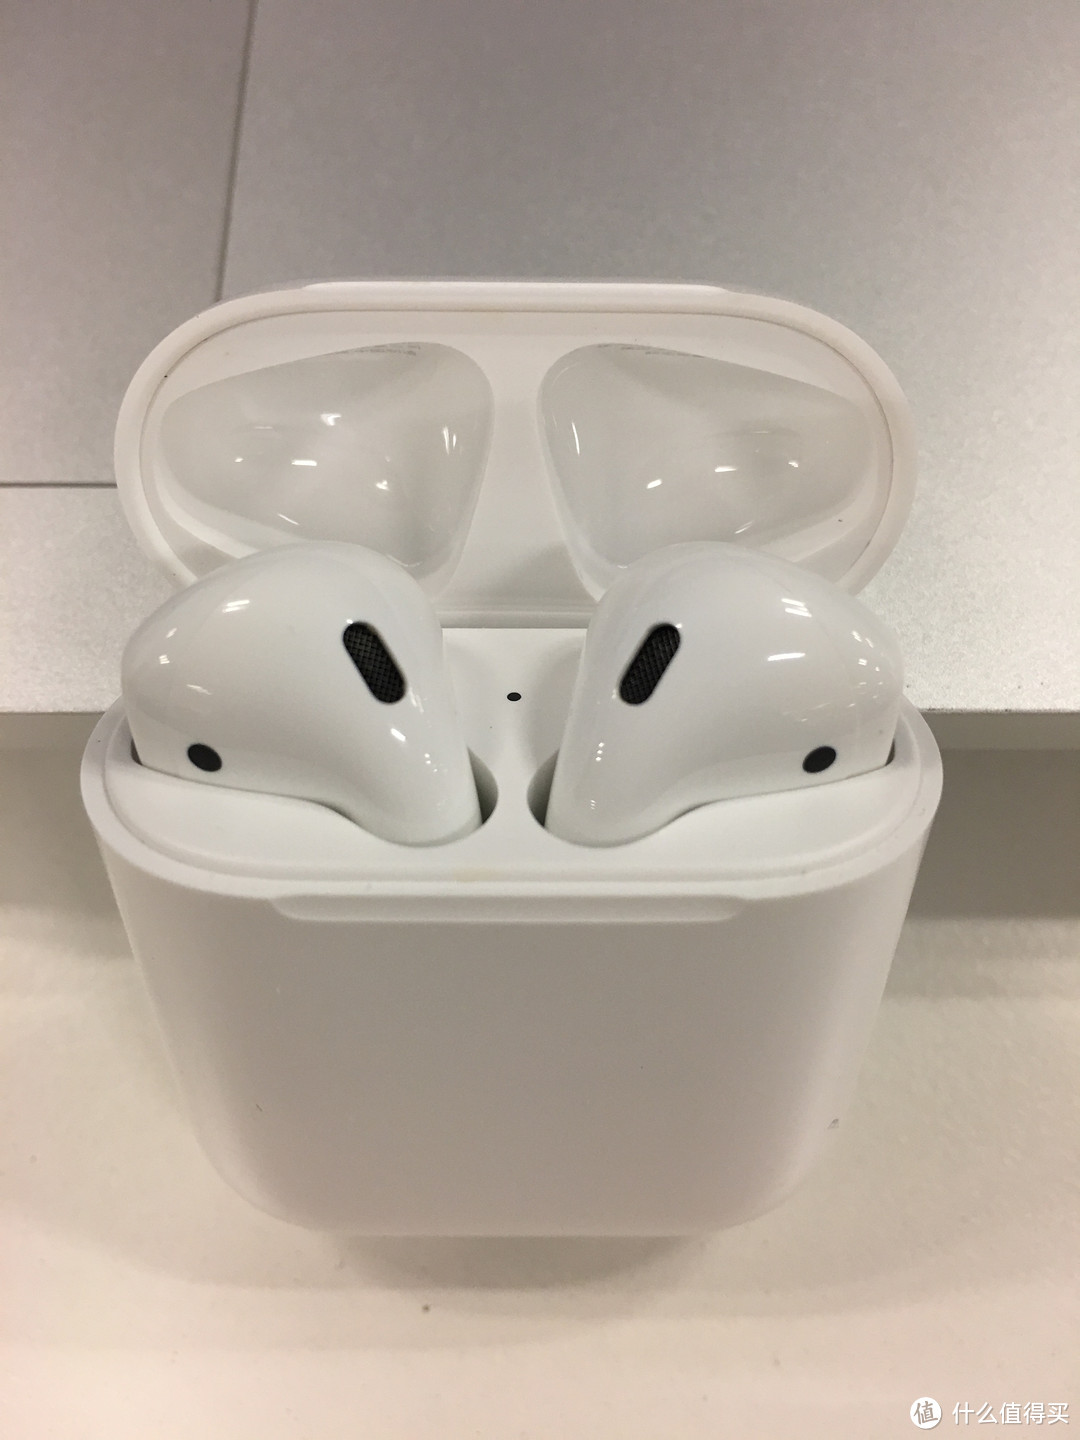 #原创新人# Apple 苹果 AirPods 无线耳机一周使用体验 (丧)